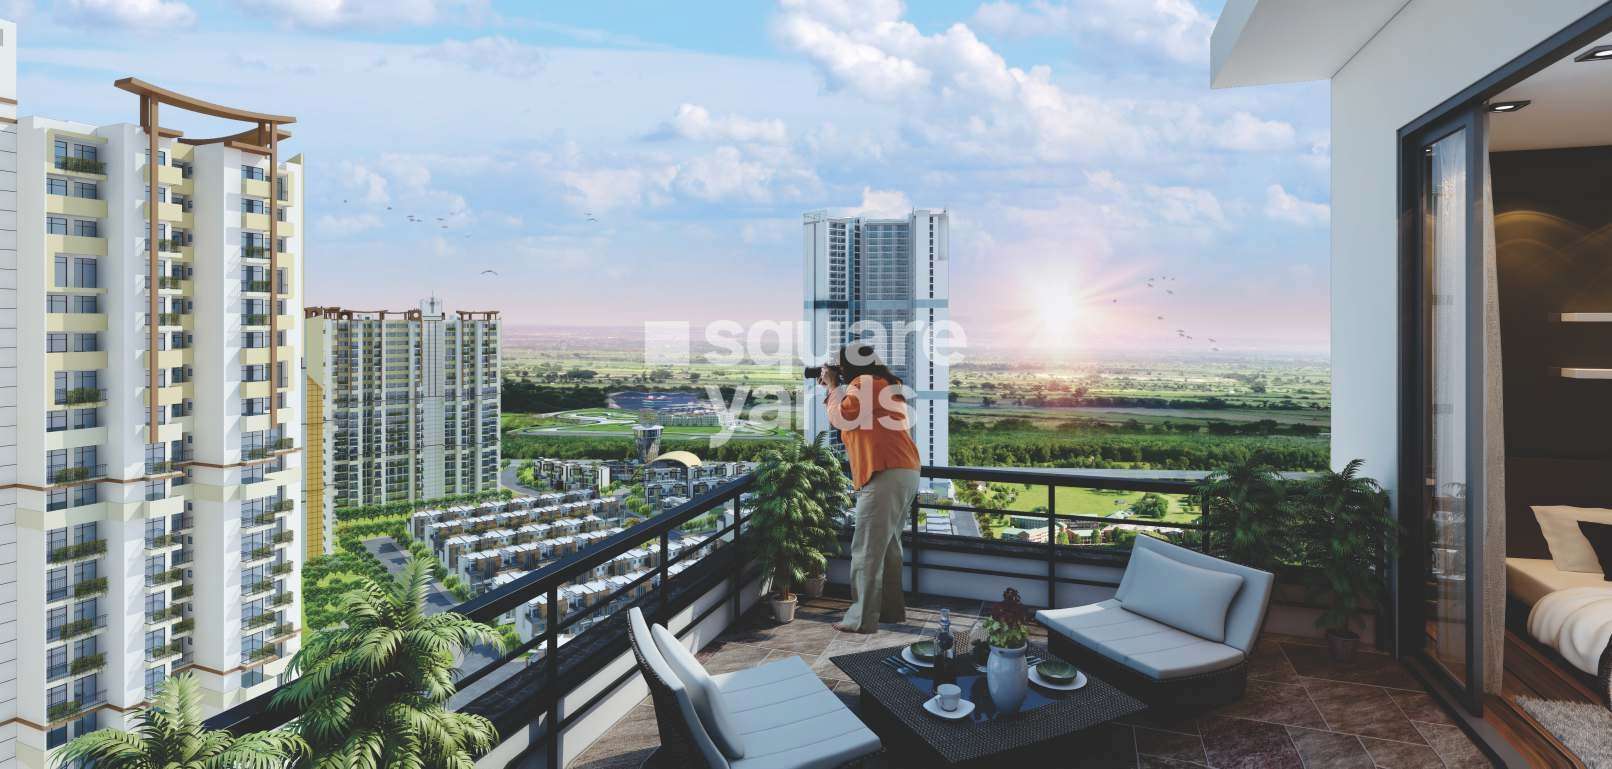 ajnara panorama facing f1 project amenities features2